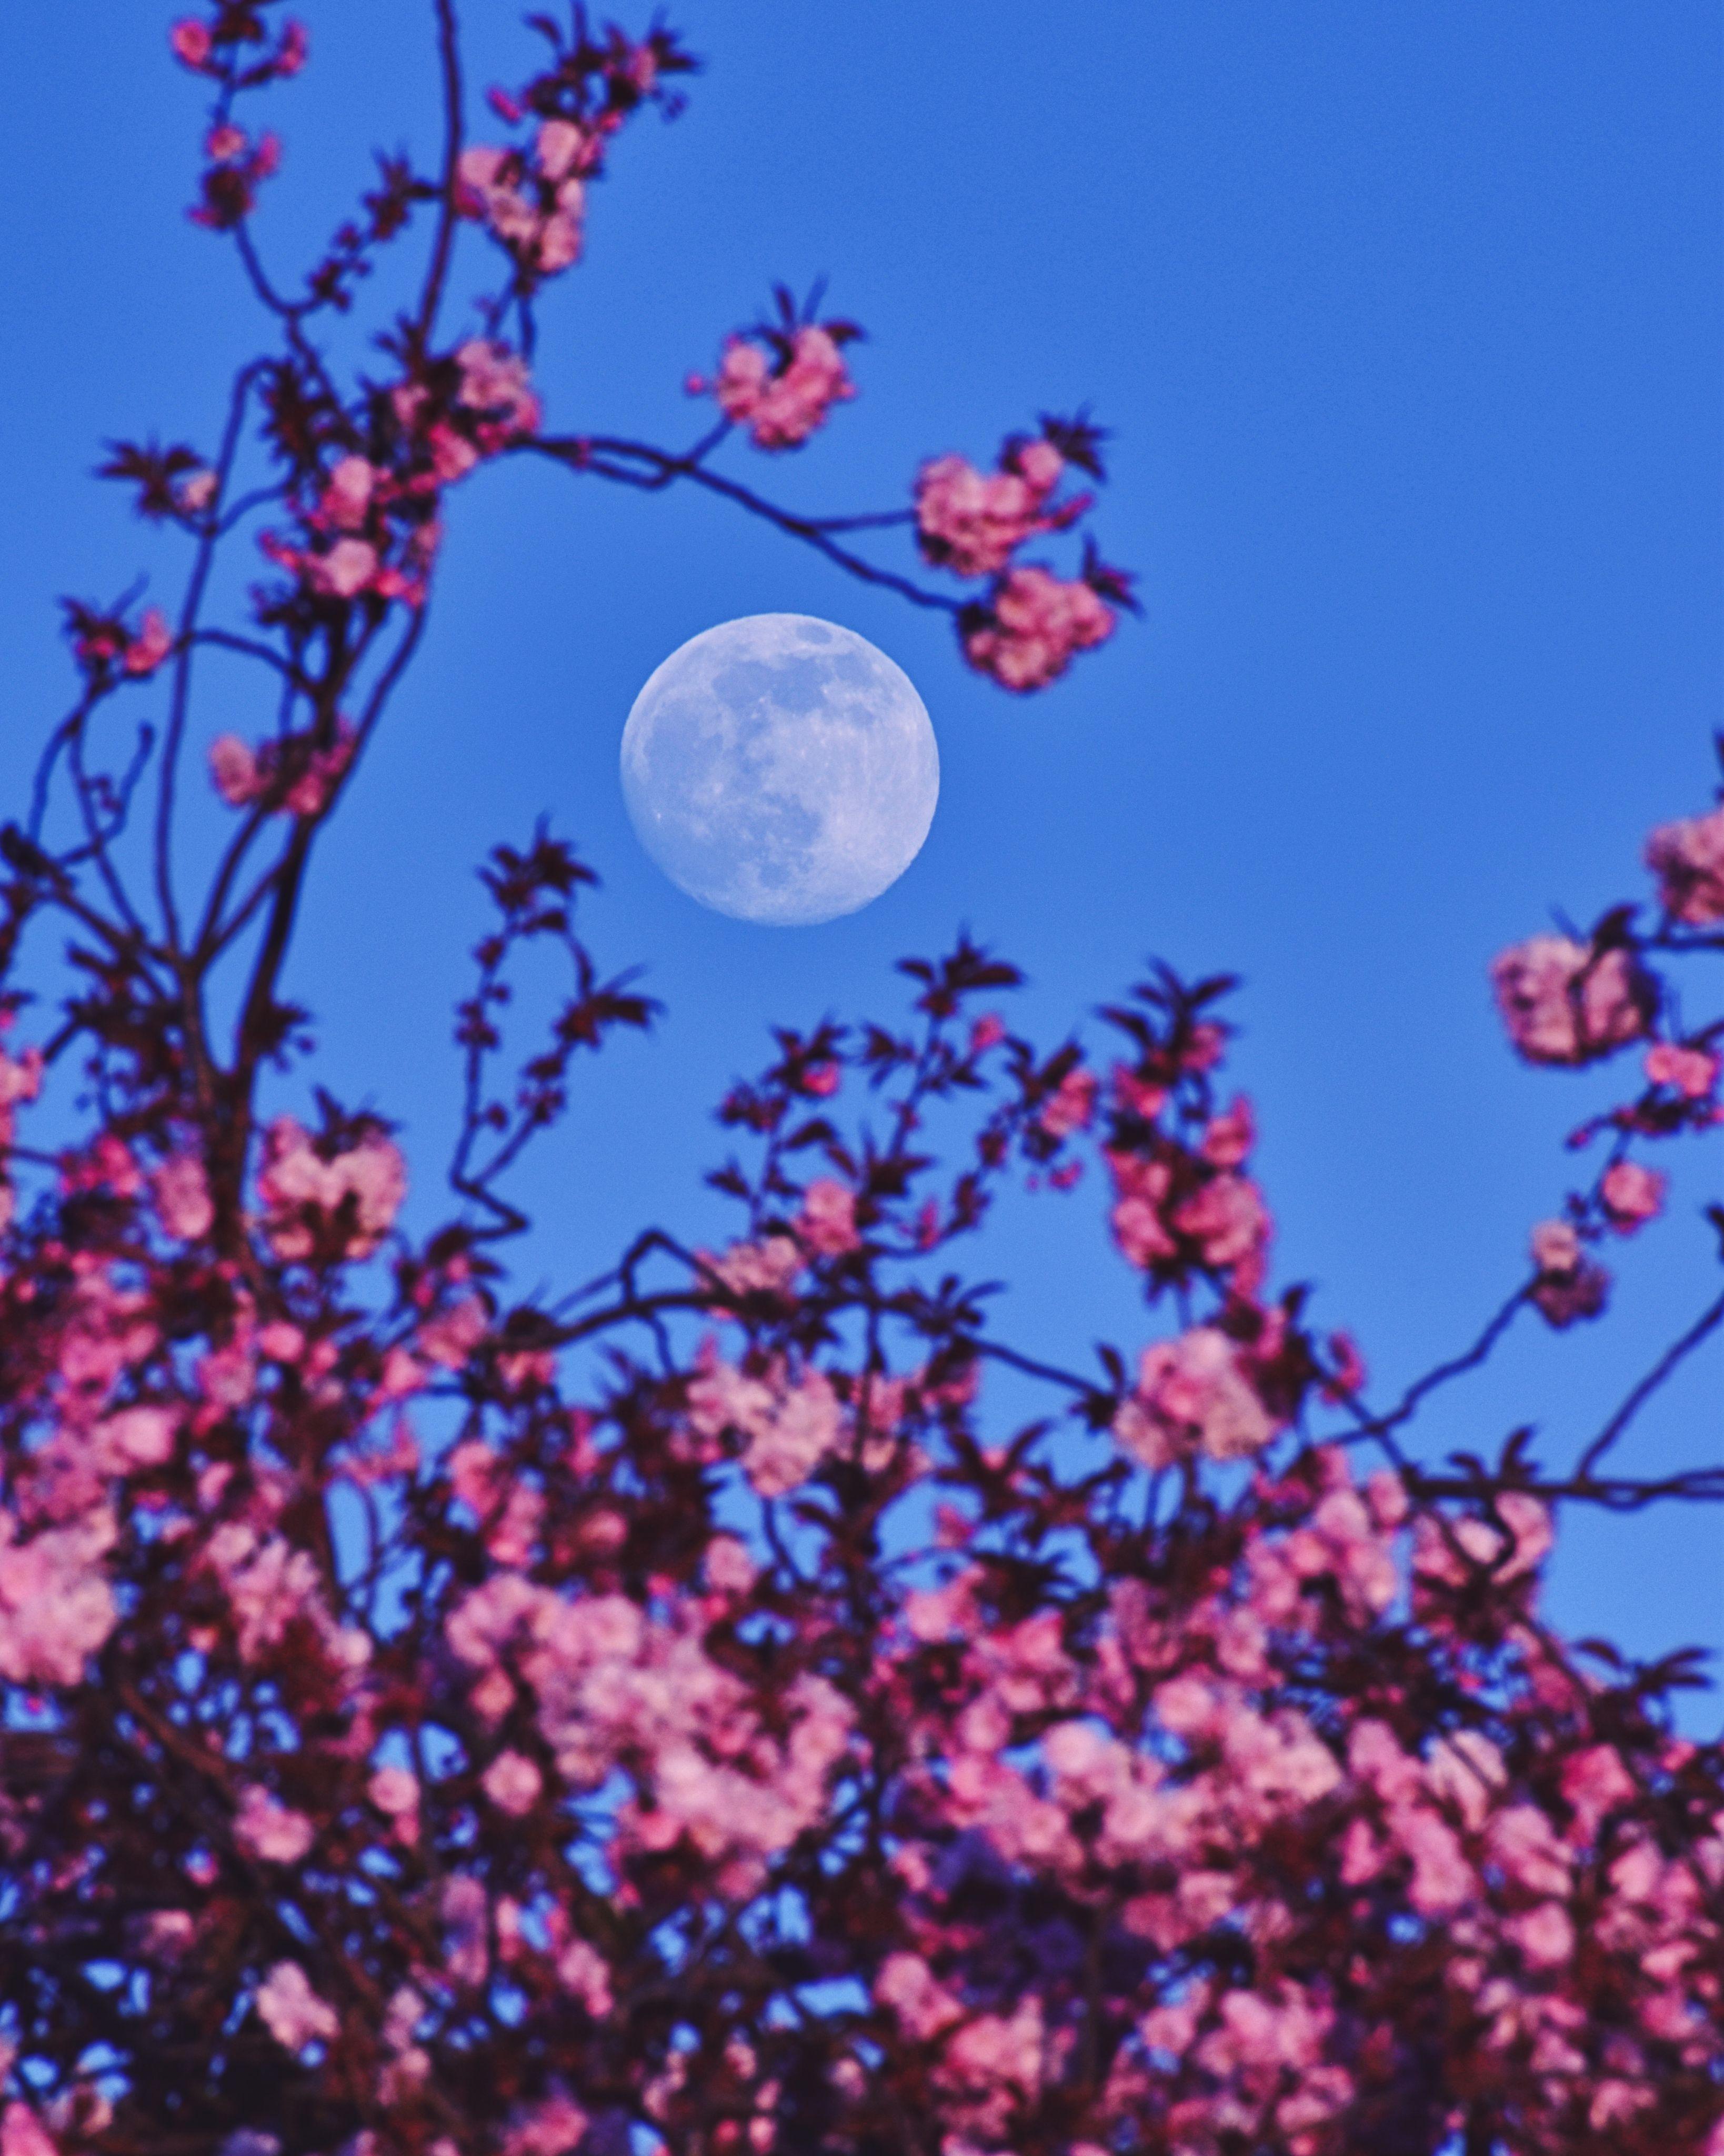 قمرٌ بدرٌ ومن حوله أغصان الكرز المزهرة بلونها الوردي ومن خلفه السماء الزرقاء الصافية.